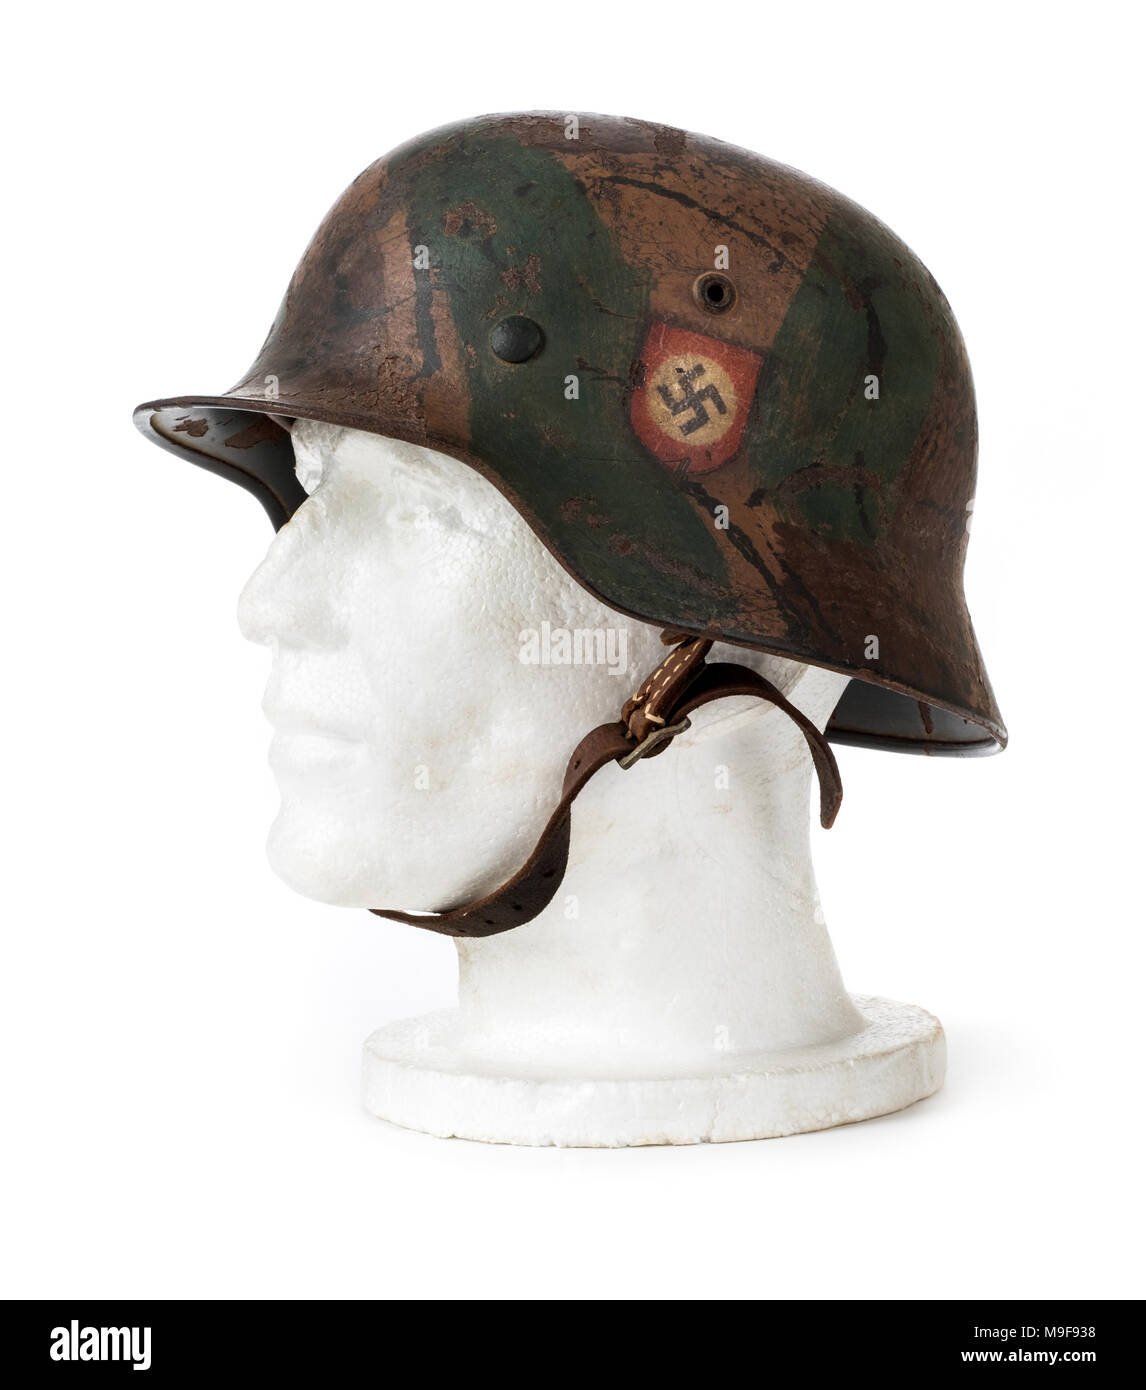 WW2 Troisième Reich allemand 'SS' casque d'acier (M40 Stahlhelm) à partir de 1940 avec les autocollants d'origine Swastika et SS, faite par Eisen und Huttenwerke A.G, Thale. Banque D'Images